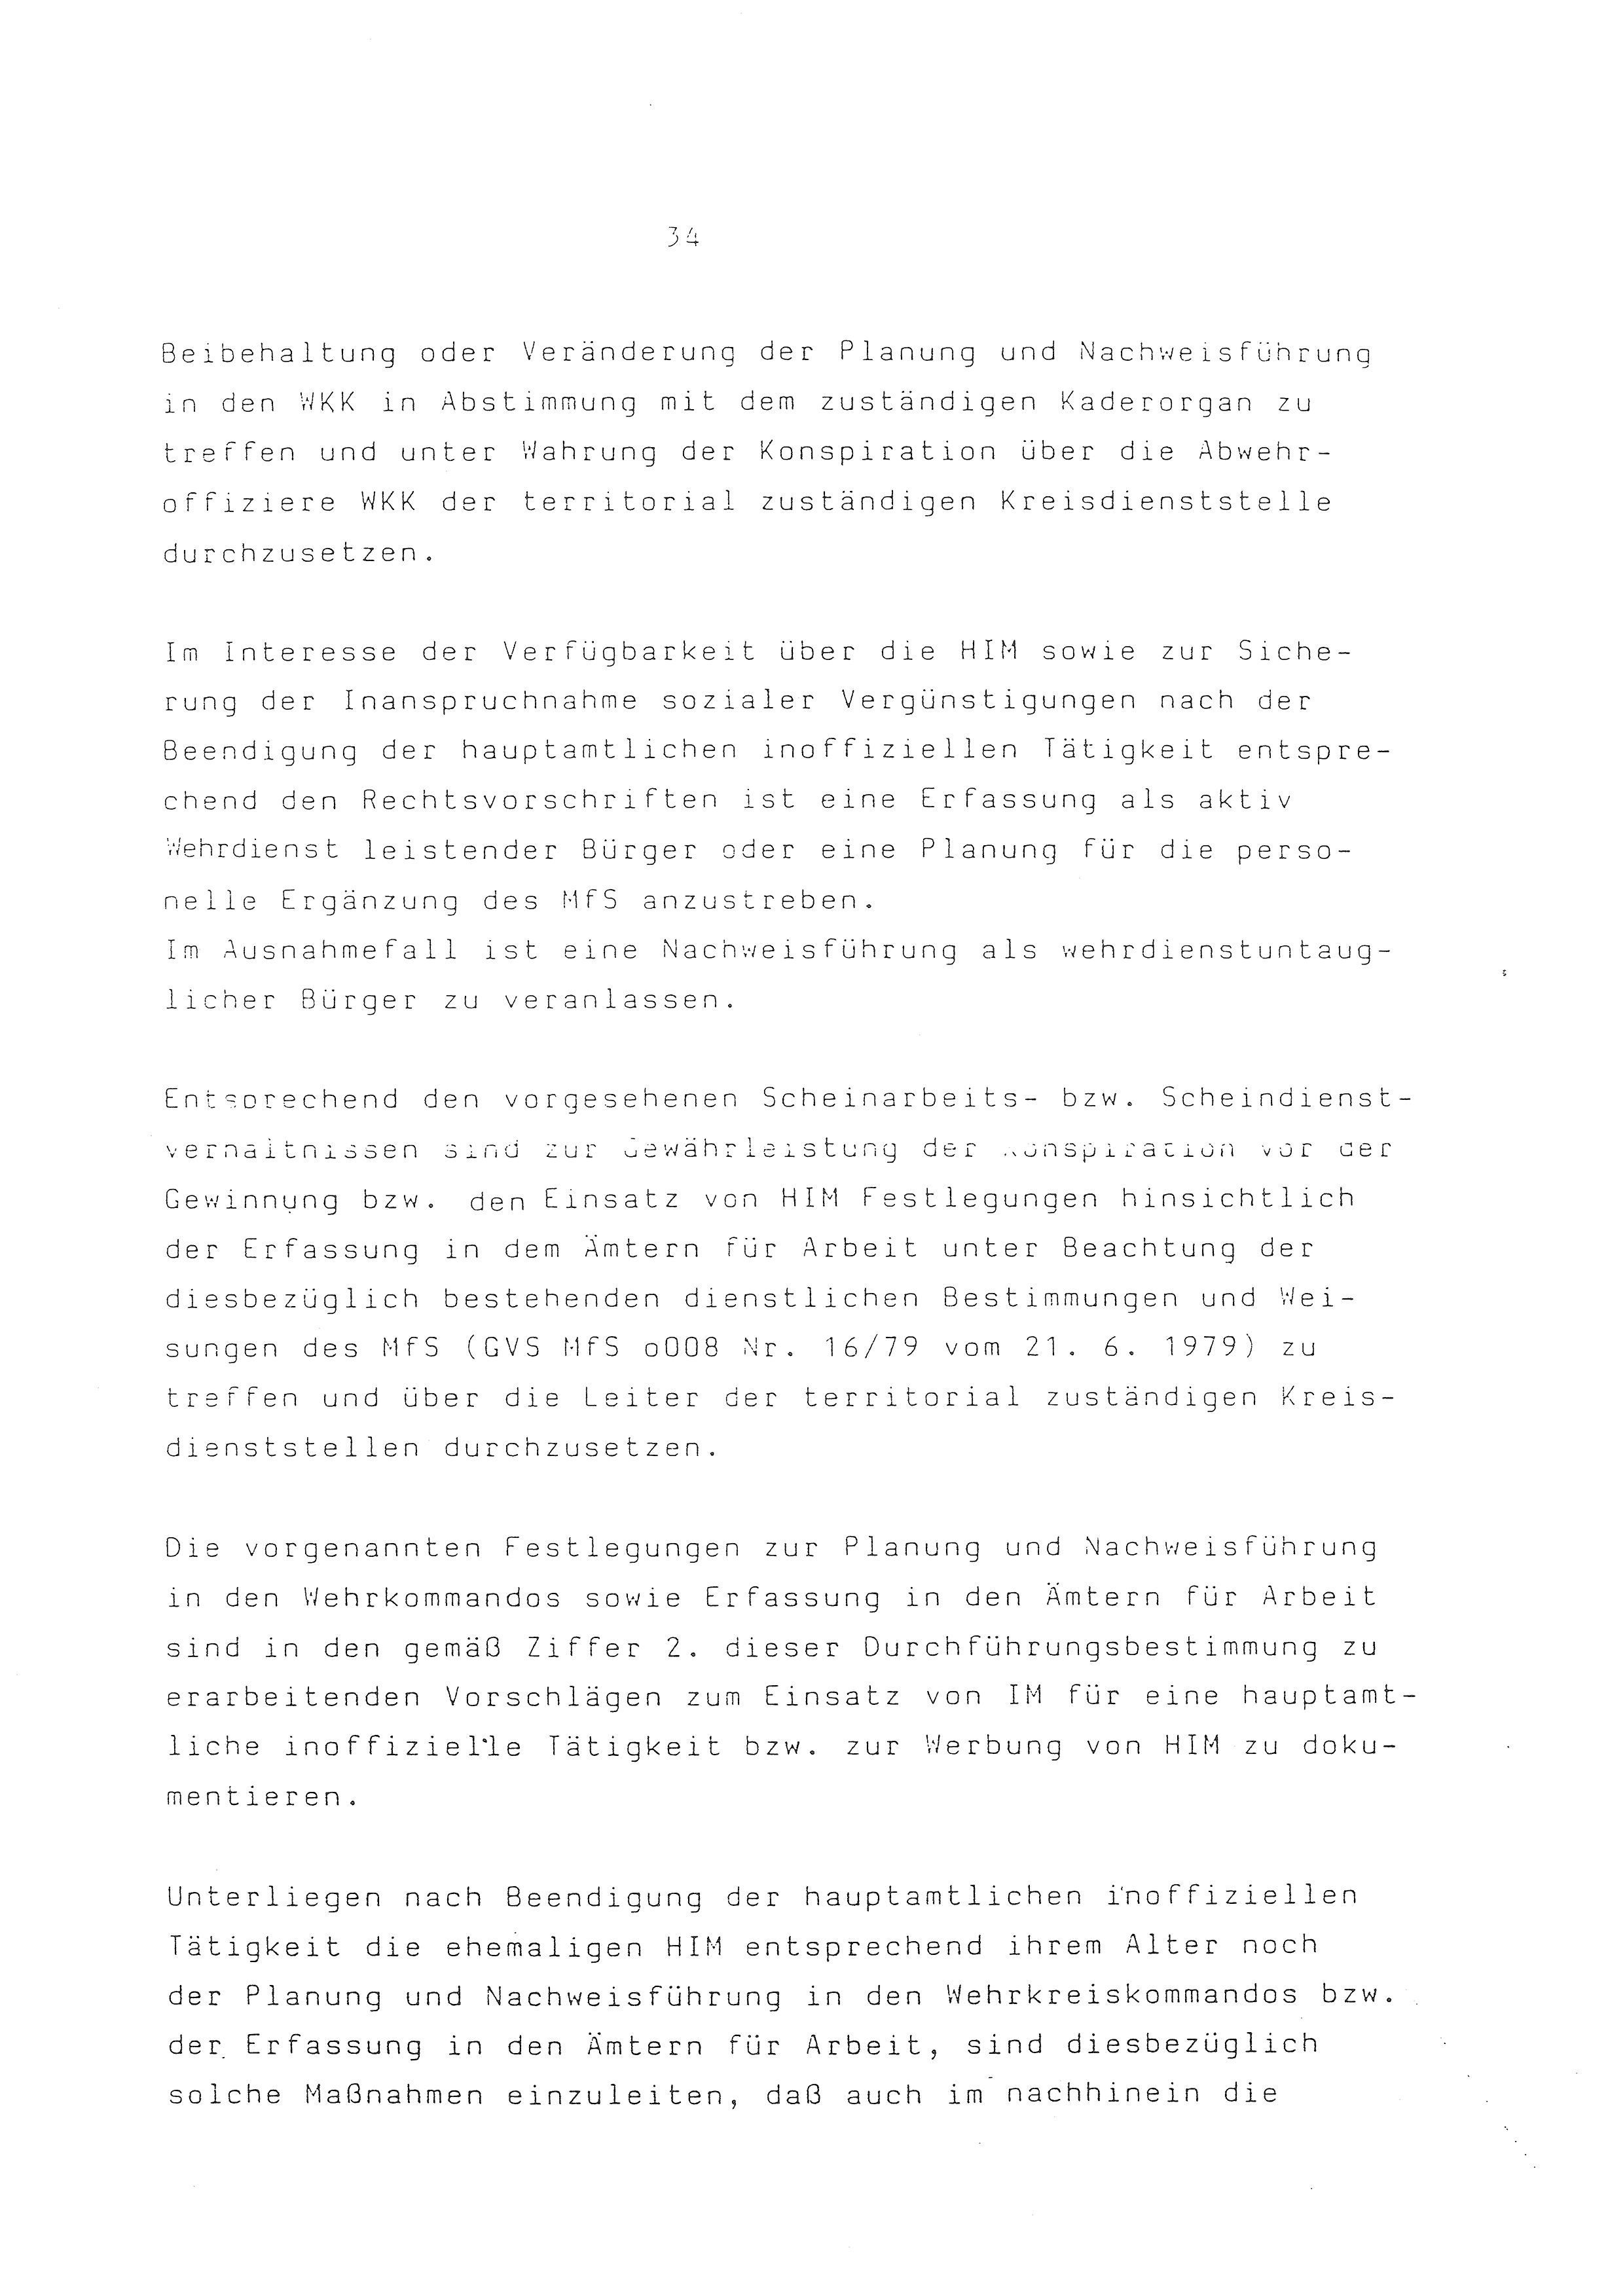 2. Durchführungsbestimmung zur Richtlinie 1/79 über die Arbeit mit hauptamtlichen Mitarbeitern des MfS (HIM), Deutsche Demokratische Republik (DDR), Ministerium für Staatssicherheit (MfS), Der Minister (Mielke), Geheime Verschlußsache (GVS) ooo8-44/86, Berlin 1986, Seite 34 (2. DB RL 1/79 DDR MfS Min. GVS ooo8-44/86 1986, S. 34)